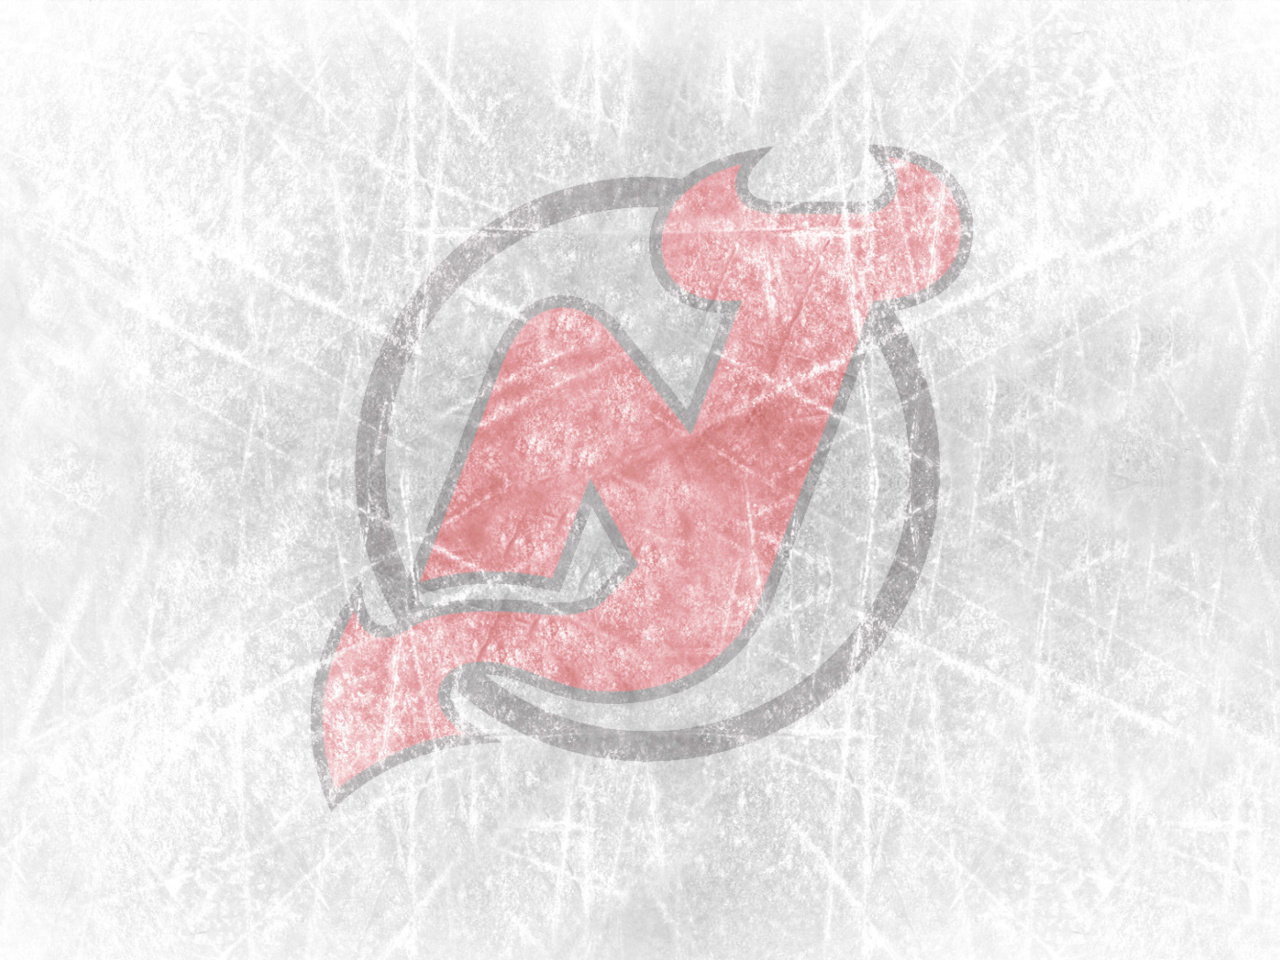 New Jersey Devils Hockey Team wallpaper 1280x960